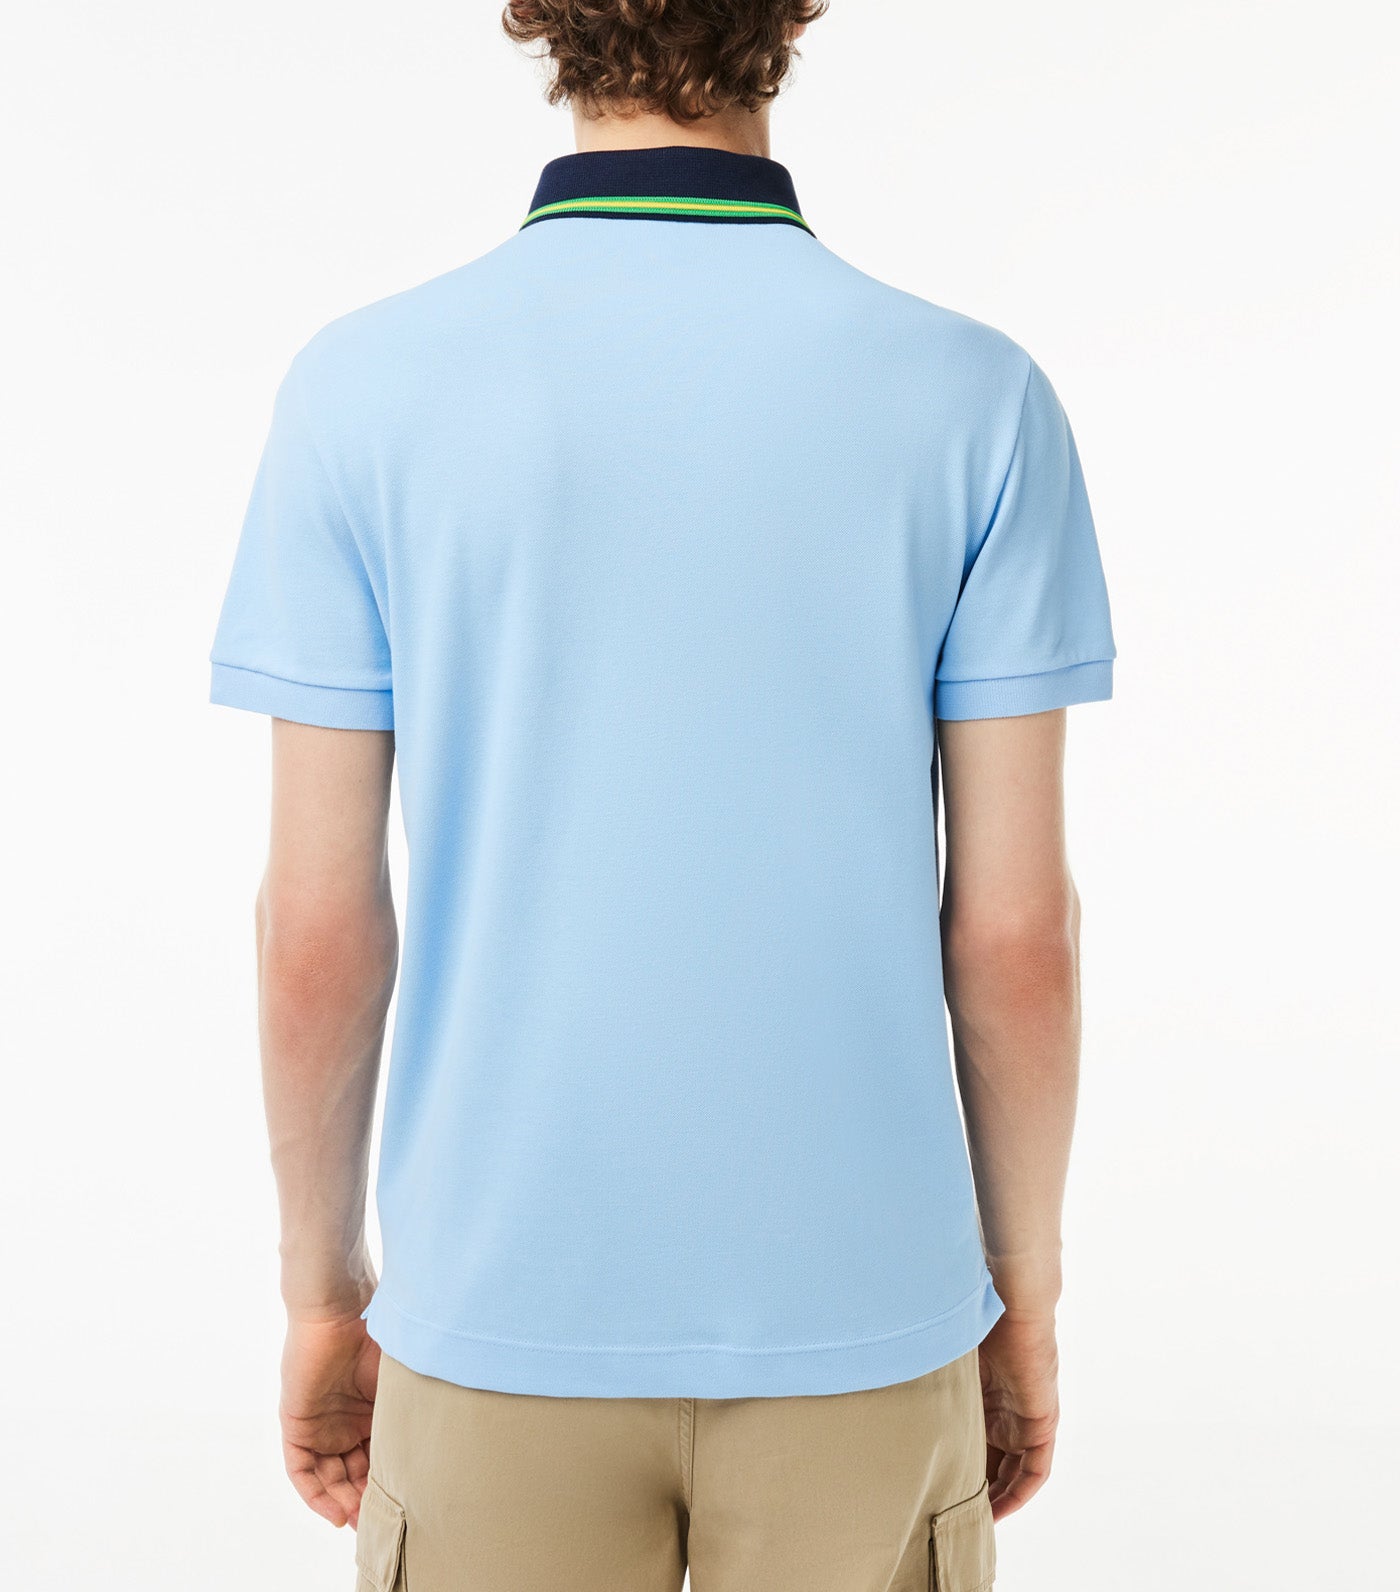 Smart Paris Contrast Collar Piqué Polo Shirt Overview